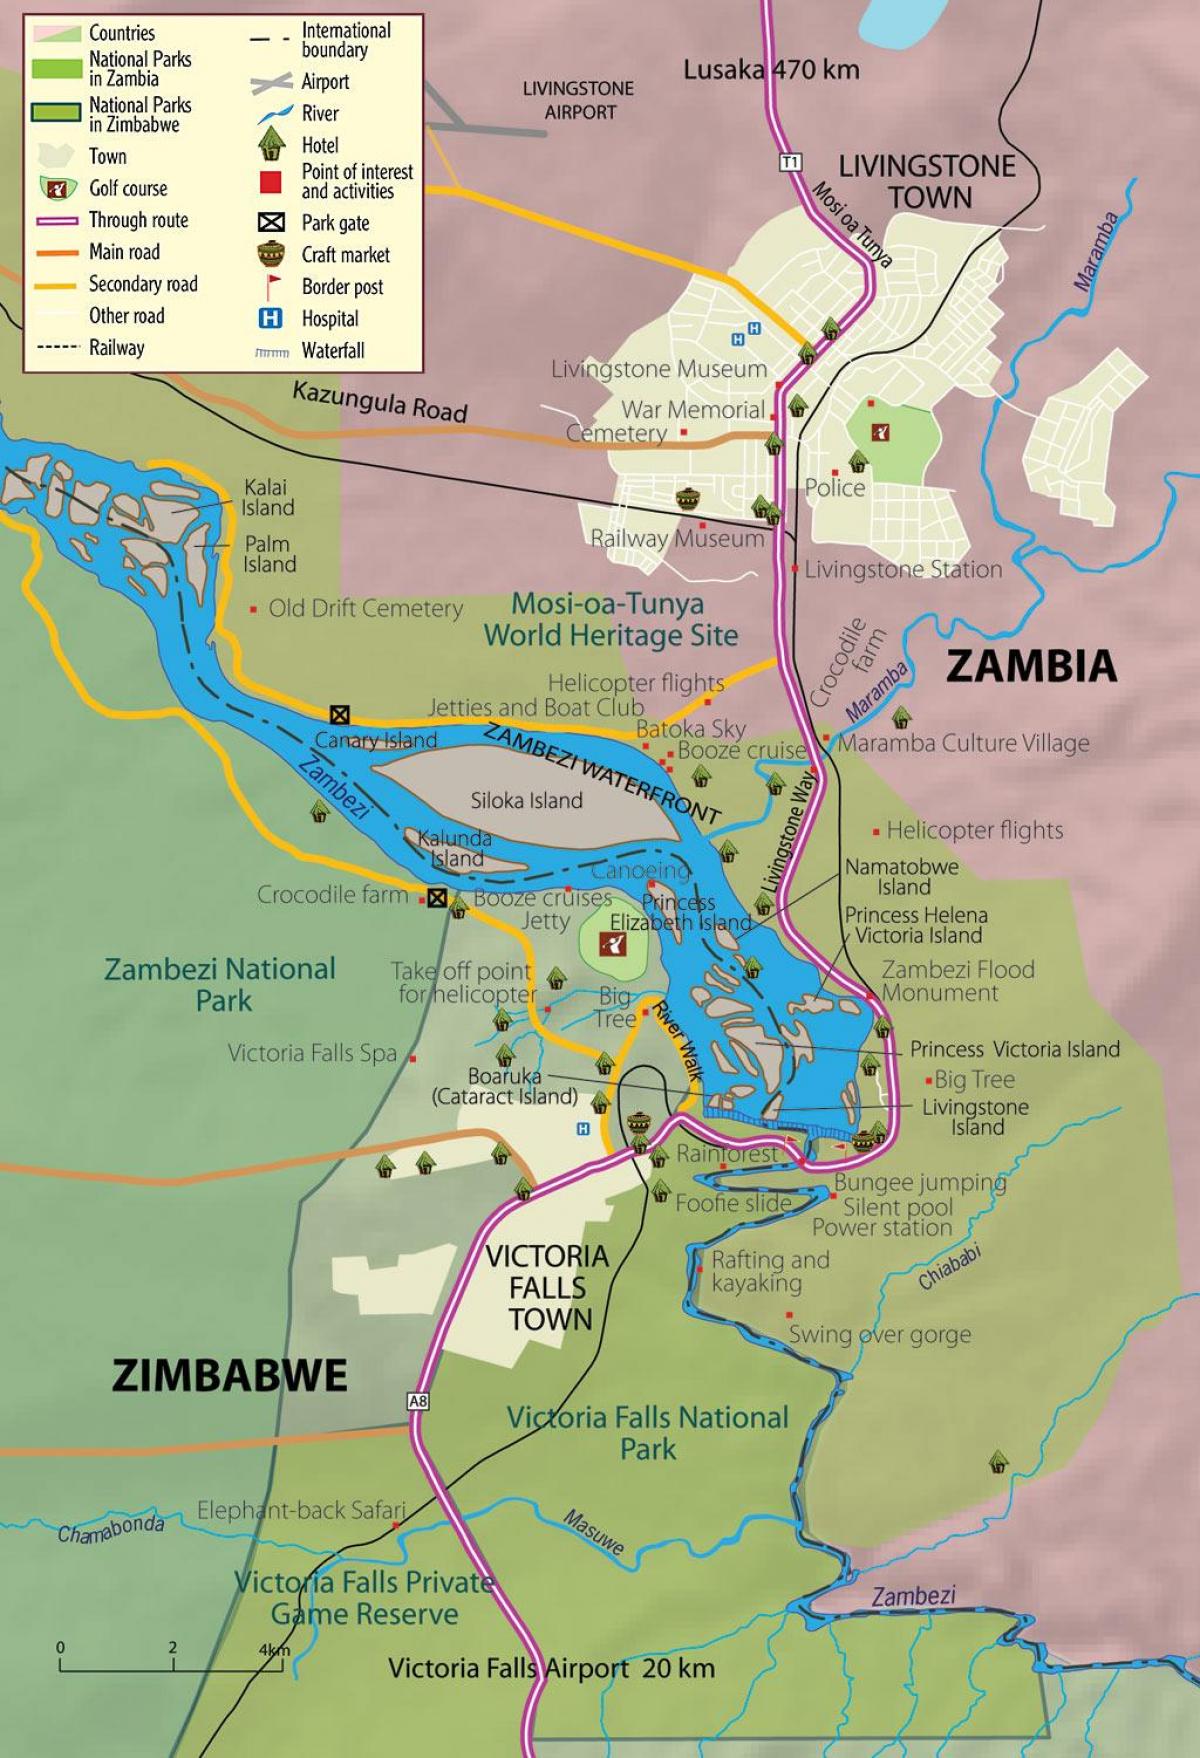 નકશો લિવિંગસ્ટોન નગર ઝામ્બિયા